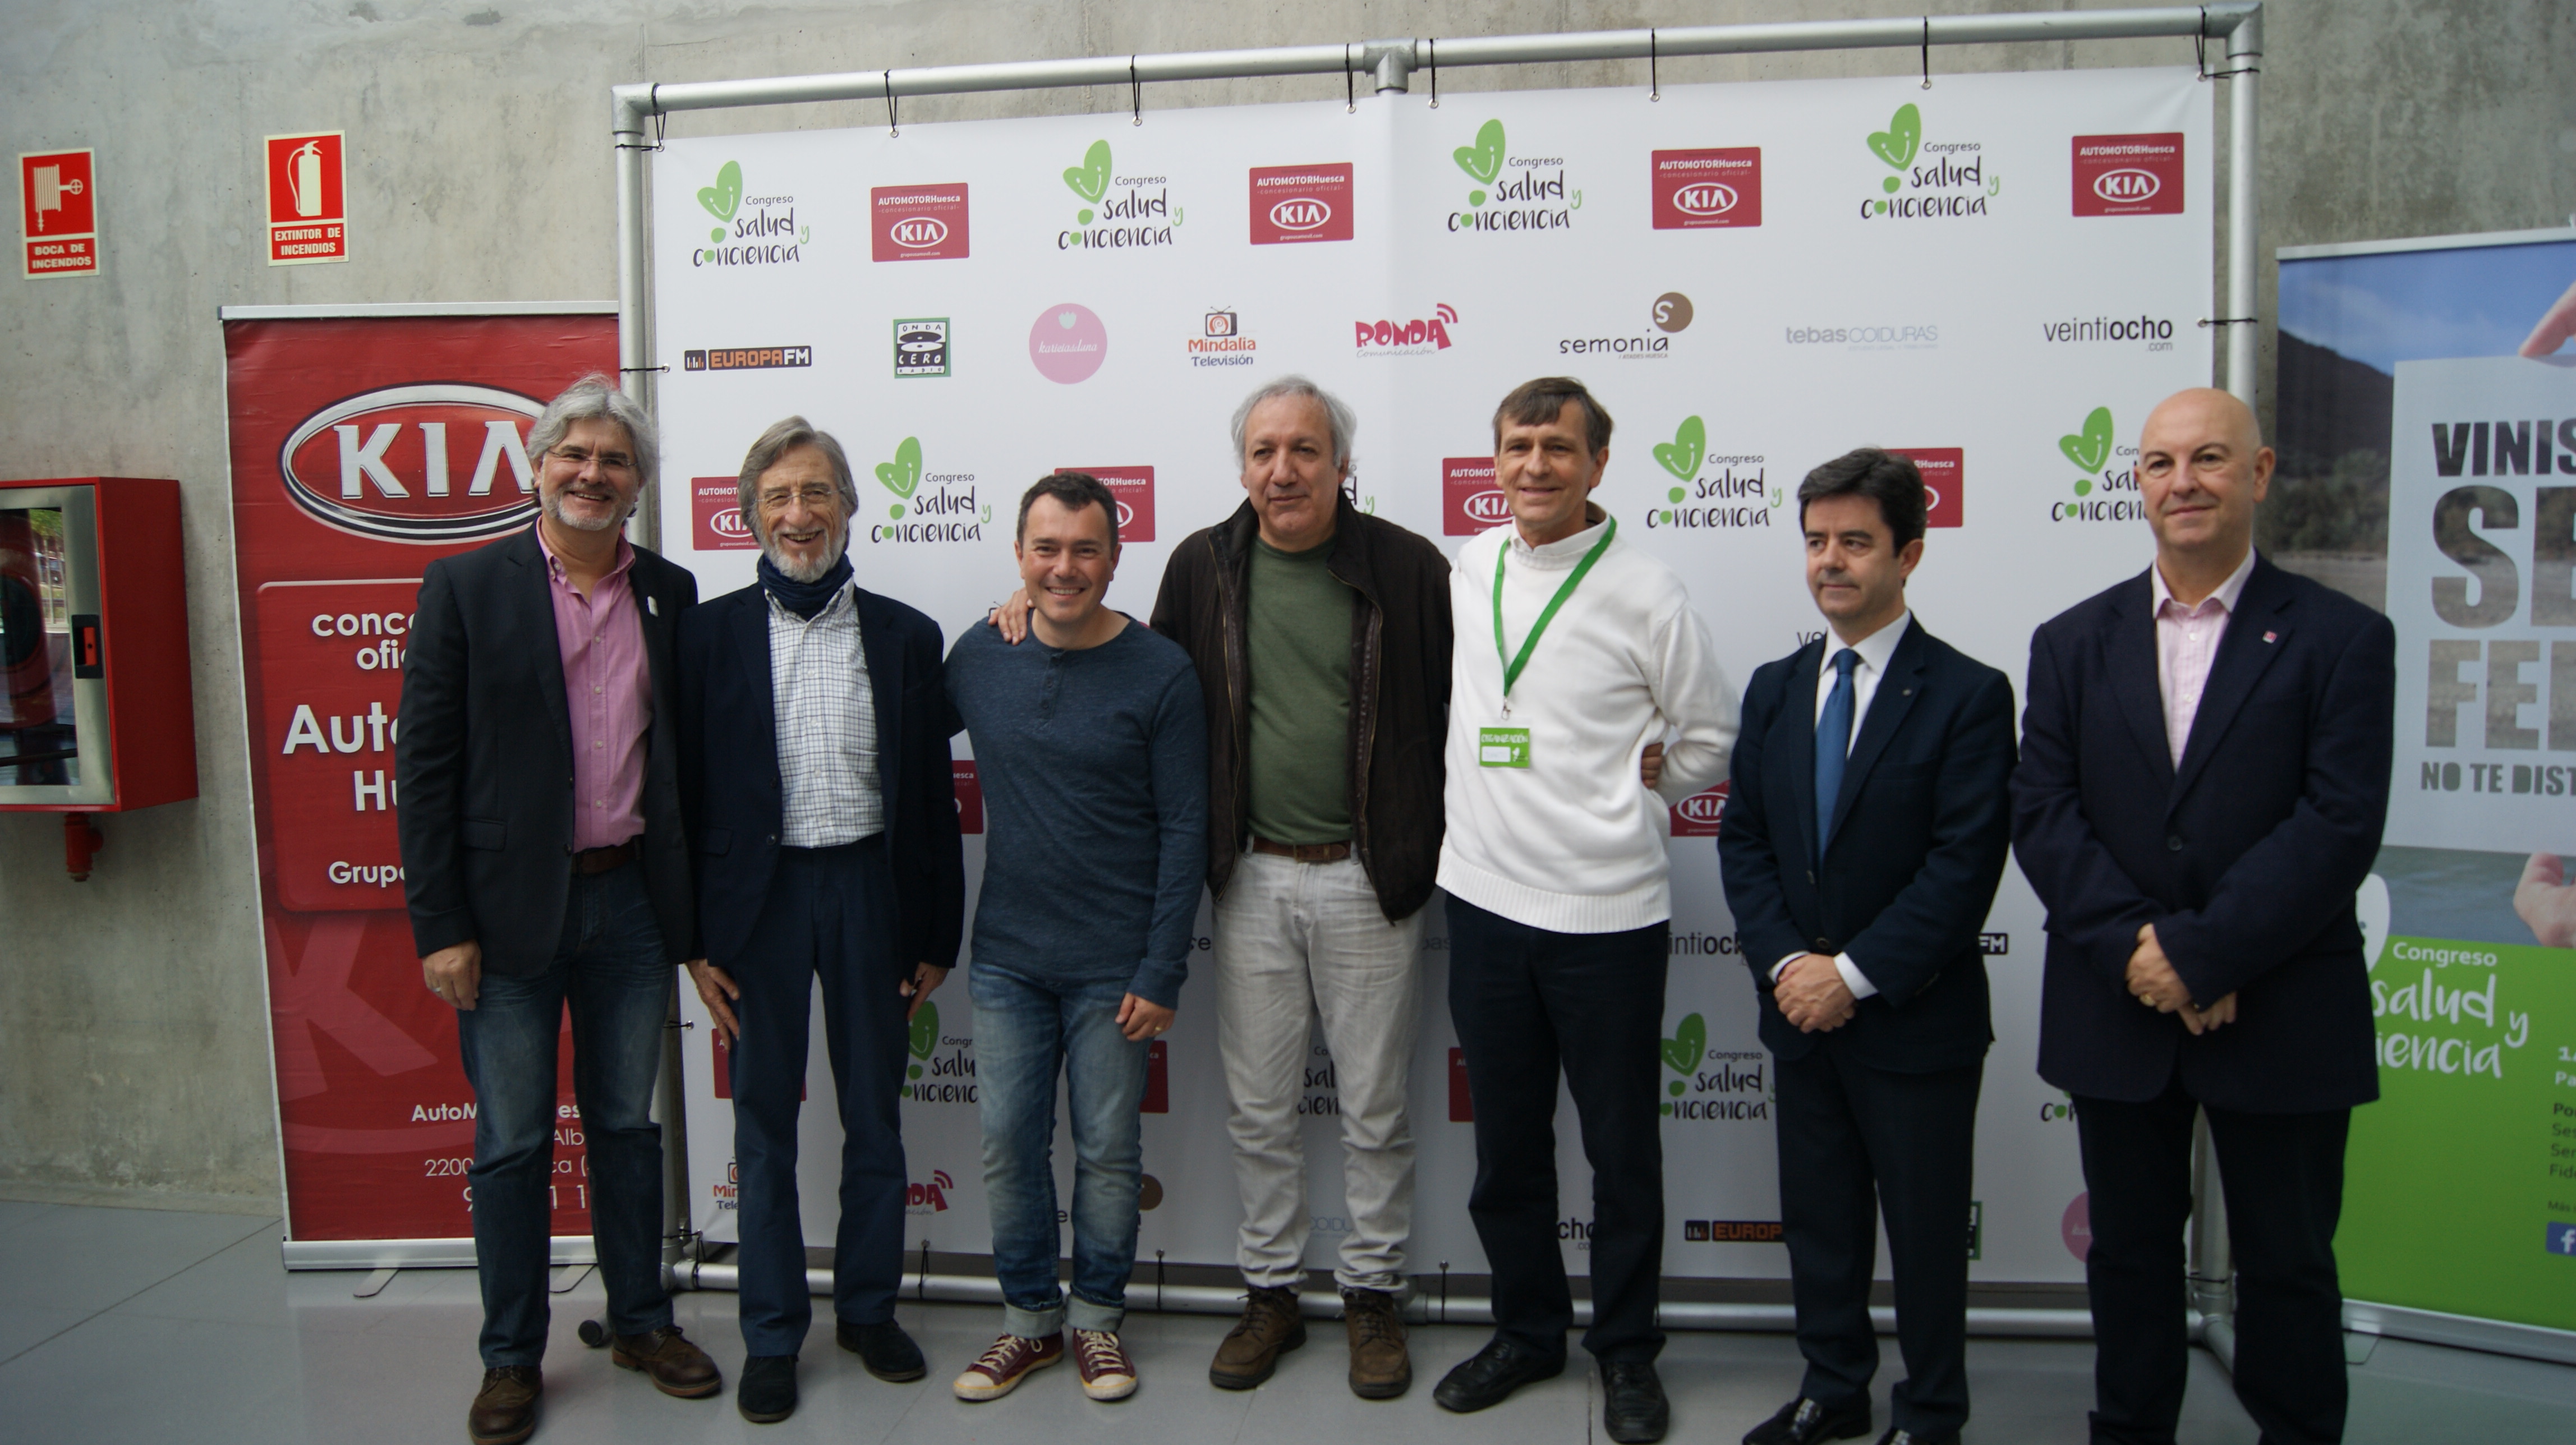 El Alcalde De Huesca Inaugura El Congreso Salud Y Conciencia